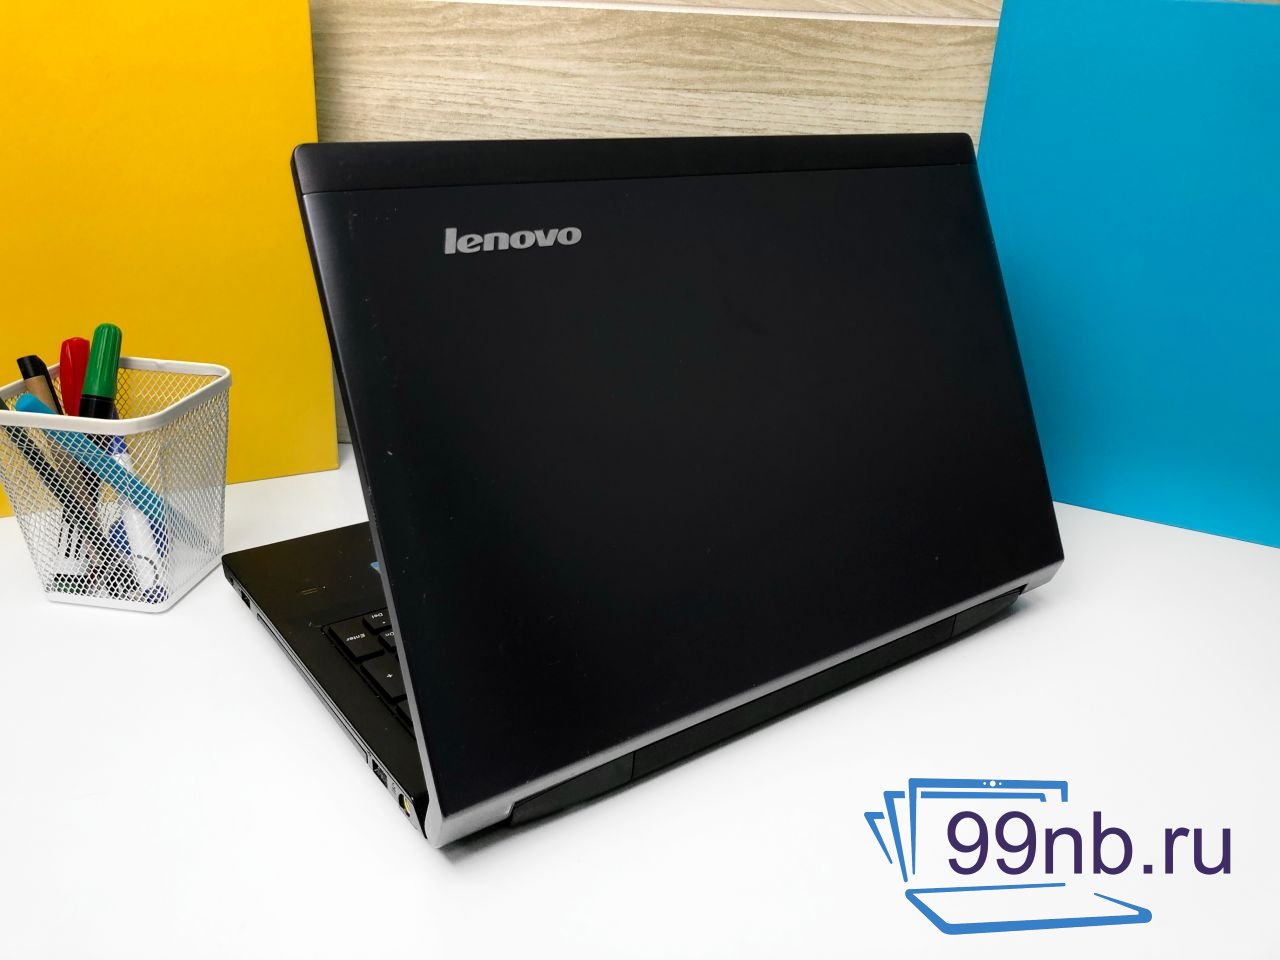  Ноутбук Lenovo Ideapad для работы и учебы+гарантия